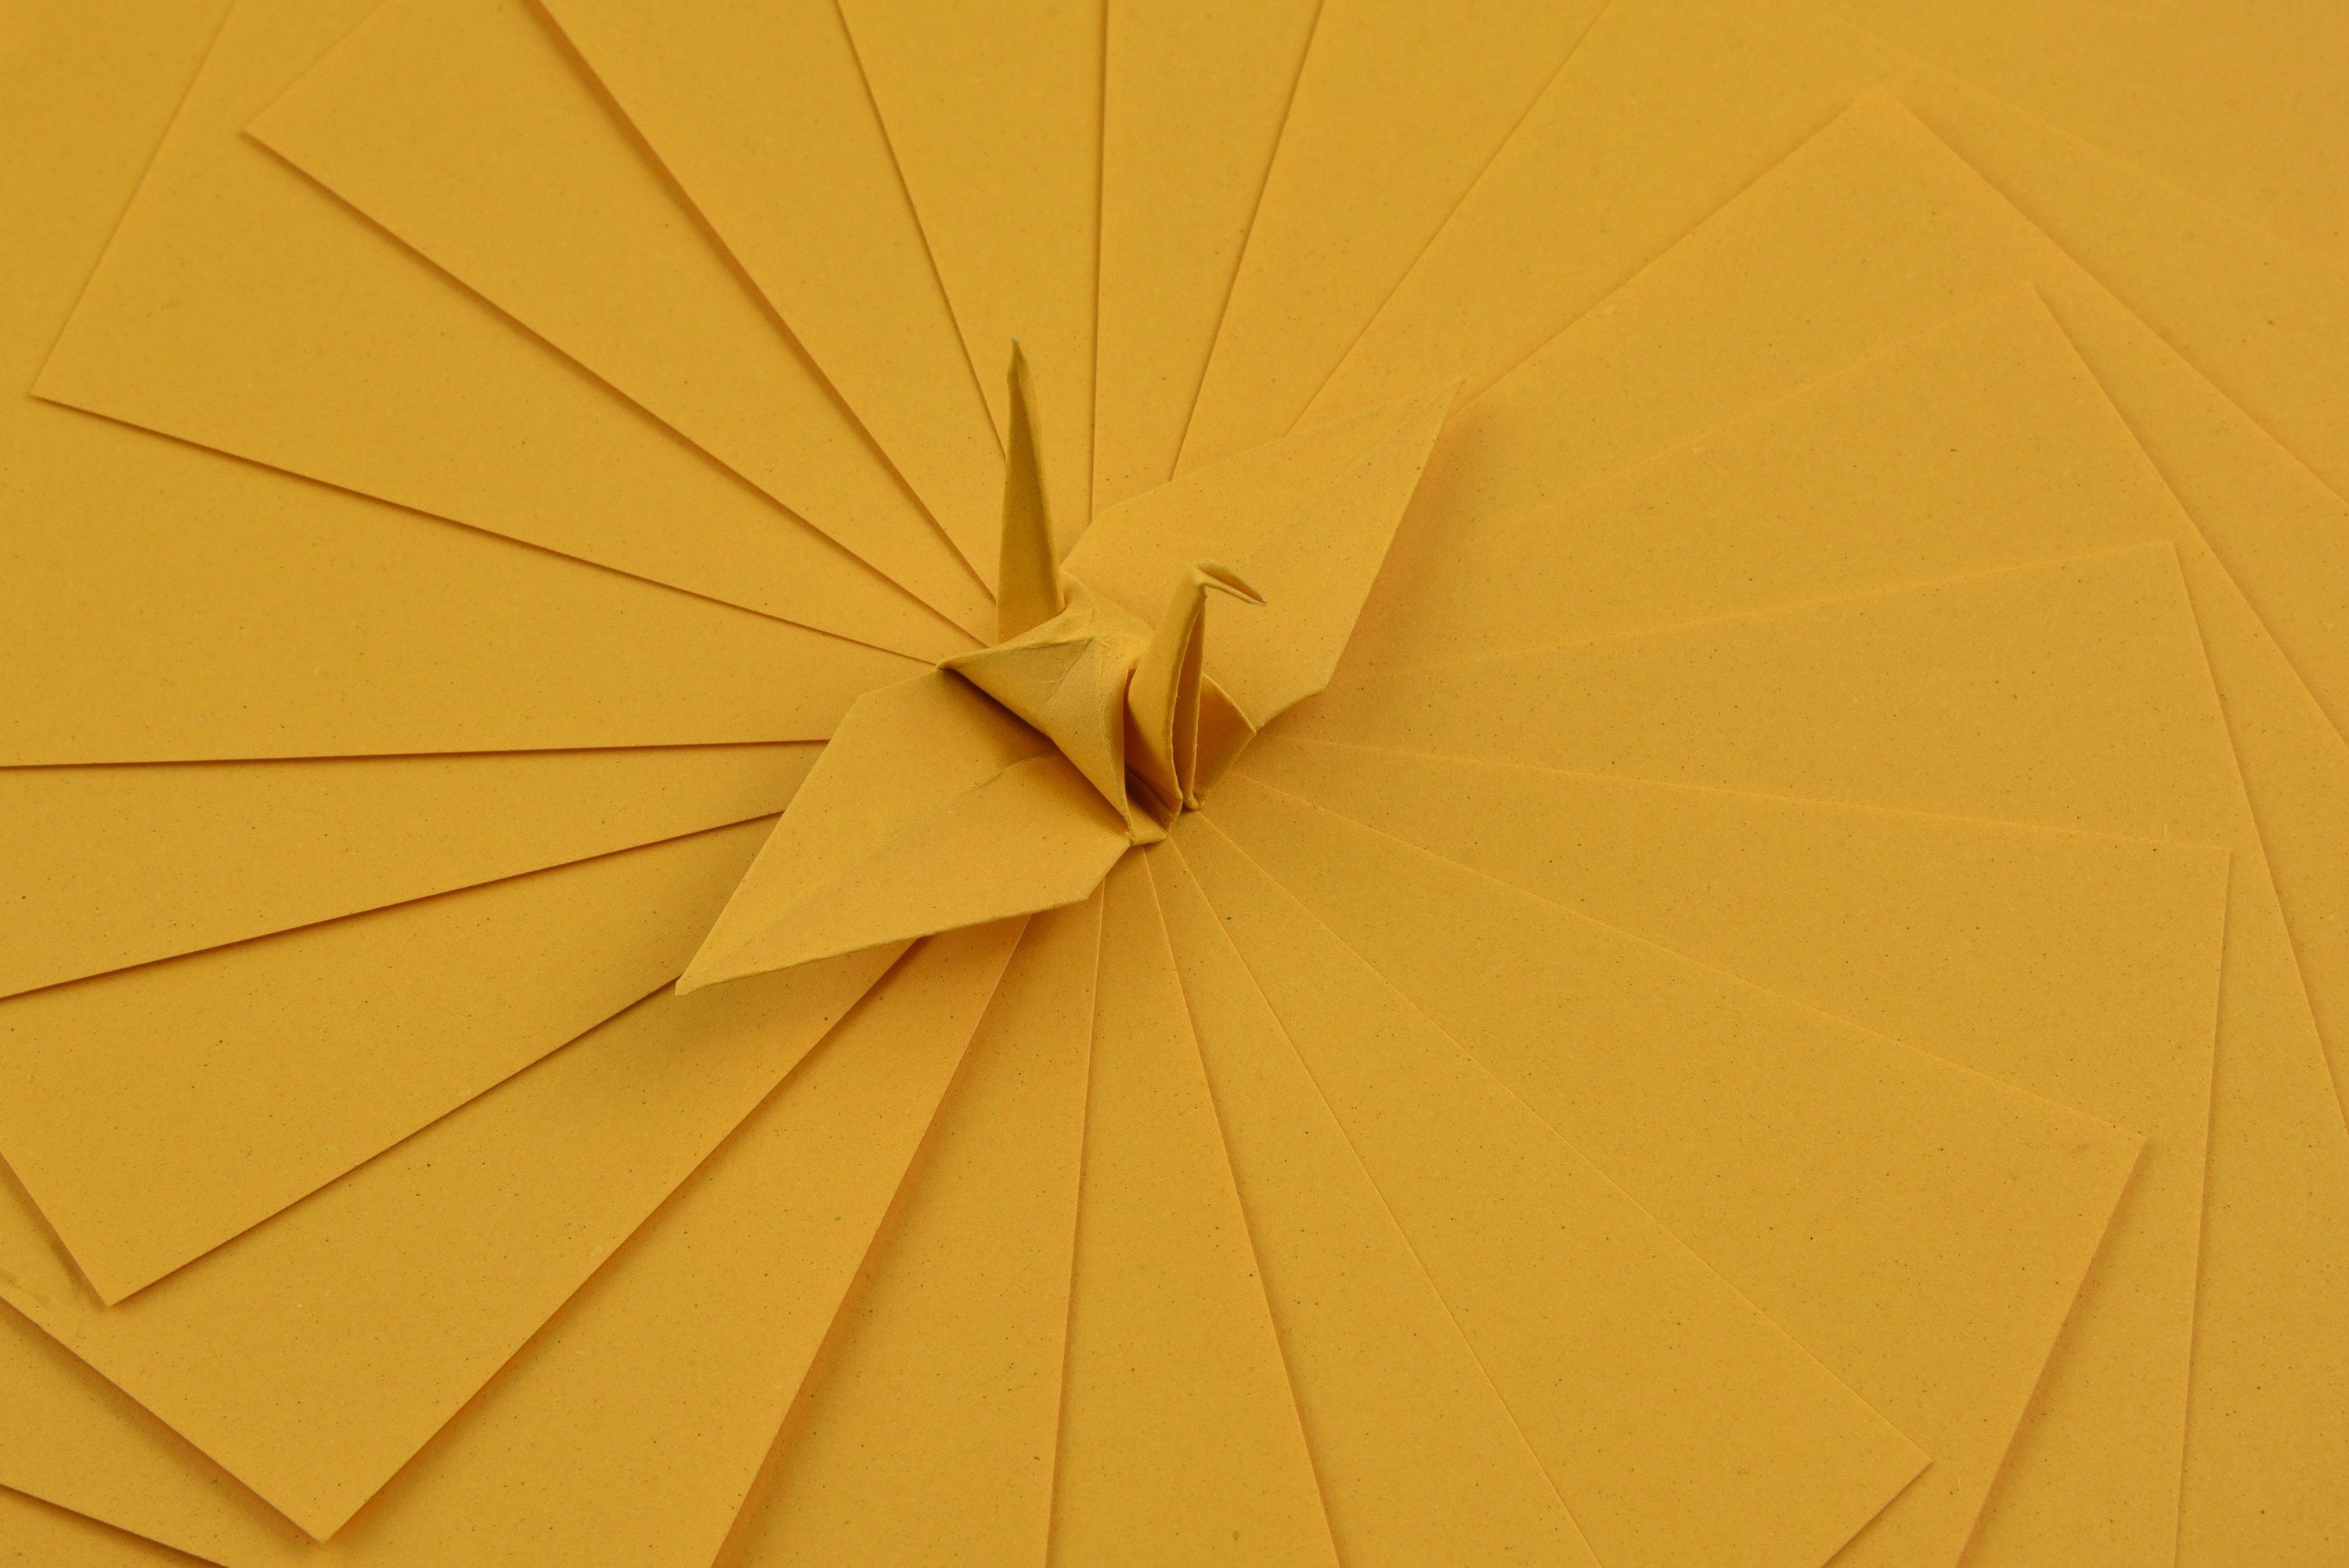 100 fogli di carta origami - 3x3 pollici - Confezione di carta quadrata per piegare, gru origami e decorazioni - S26